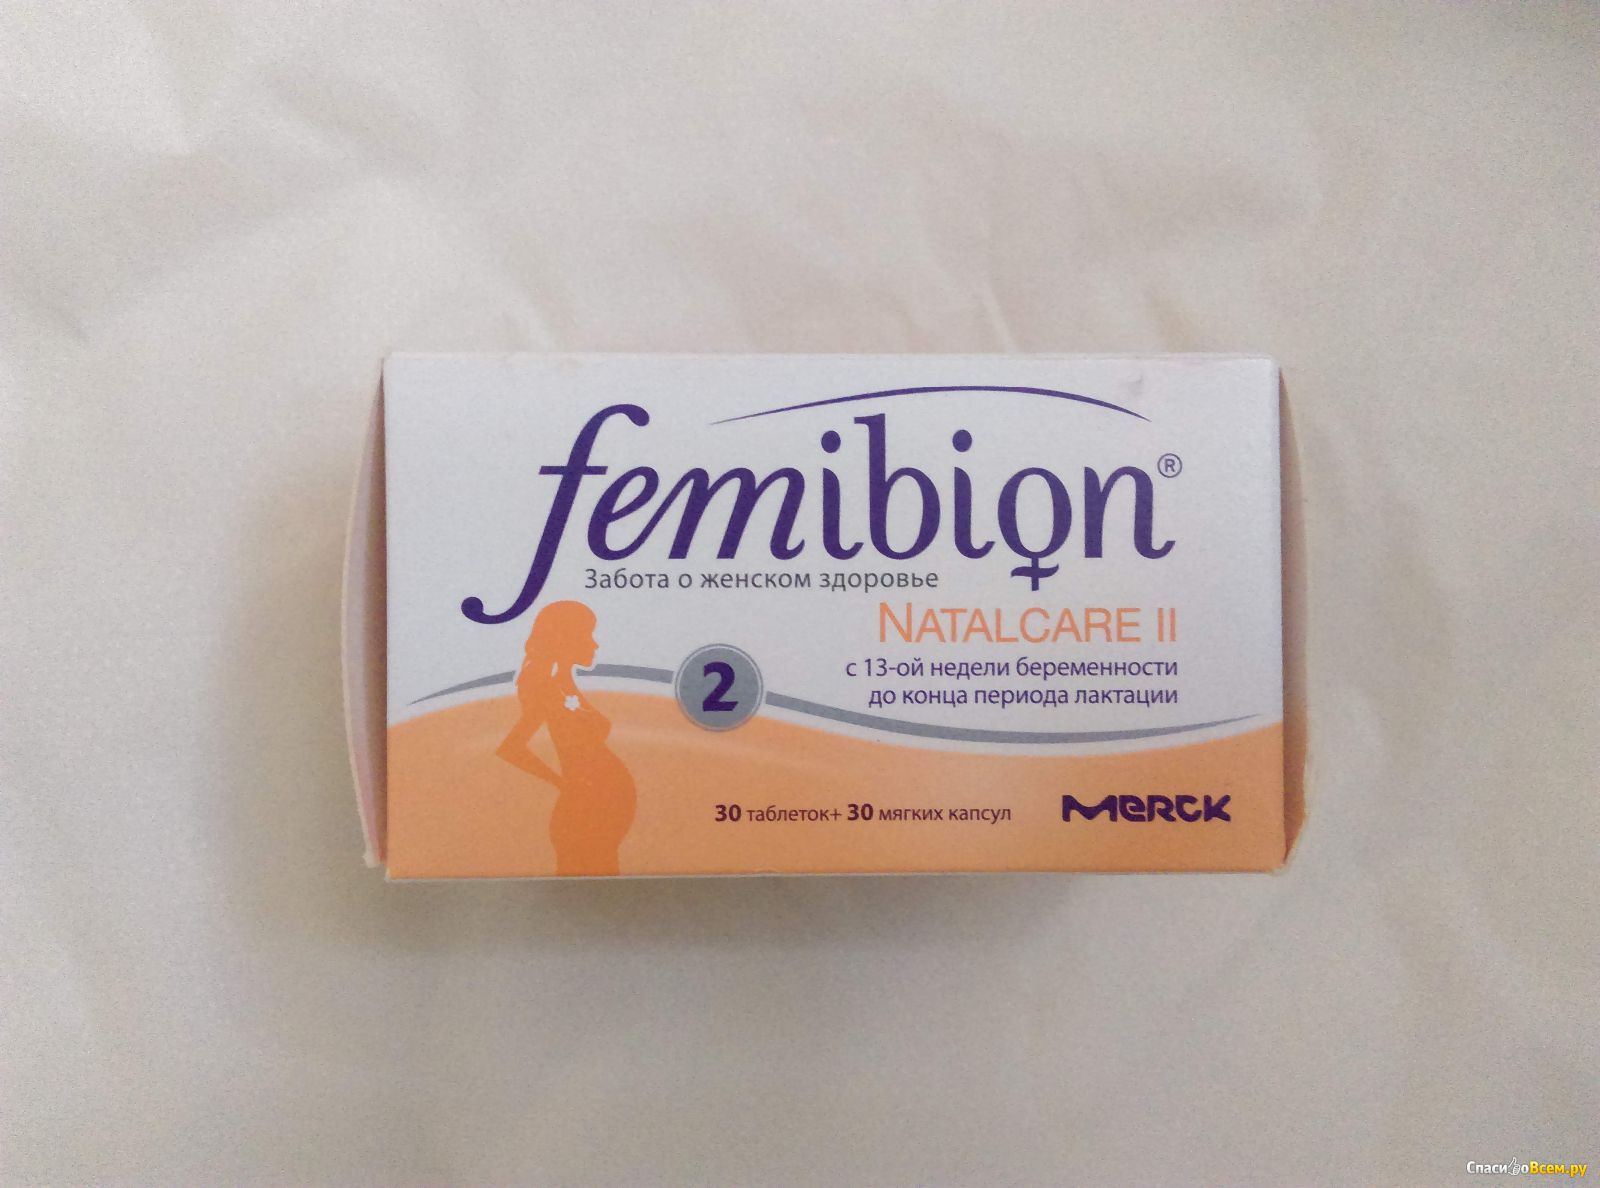 Femibion natalcare 2. Фемибион наталкеа 2 таб + капсулы n30. Фемибион с 13 недели беременности. Фемибион 2 аптека